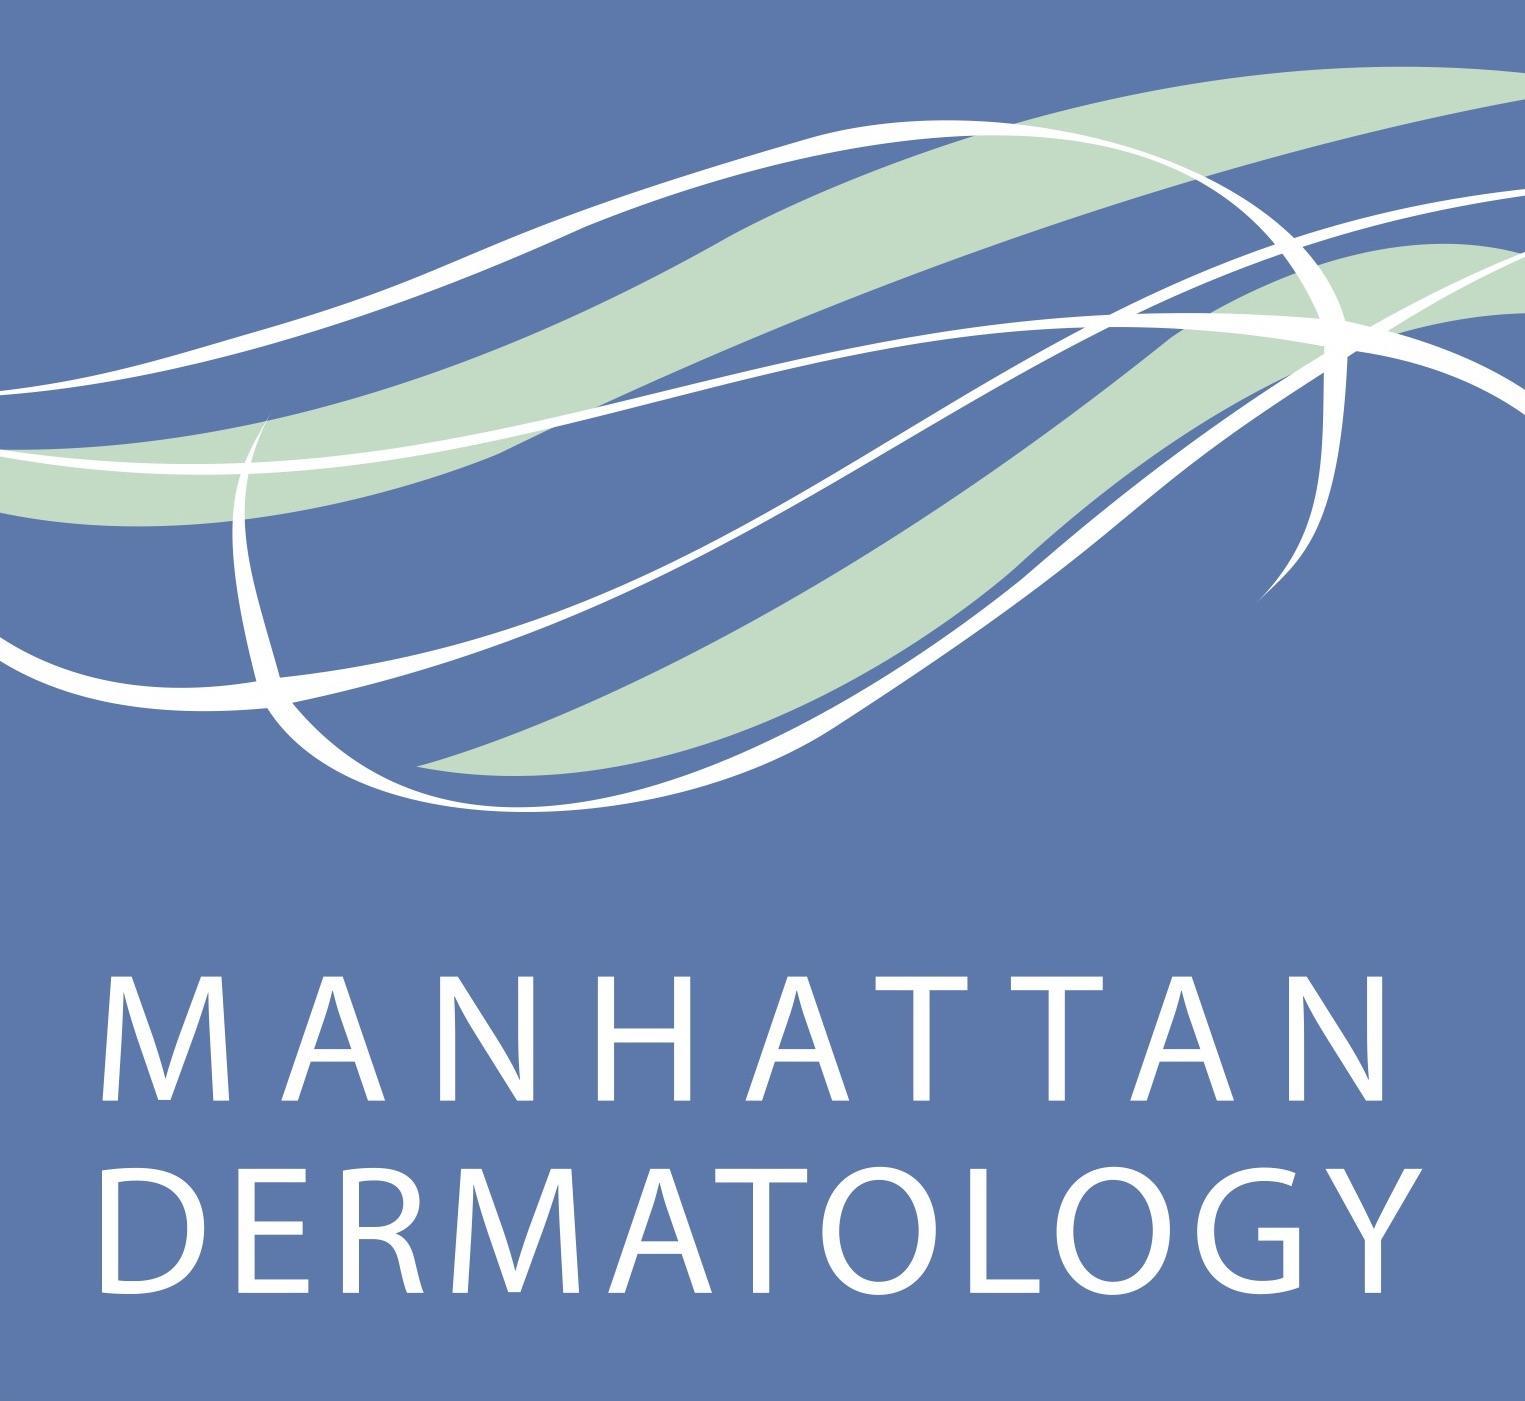 Manhattan Dermatology logo